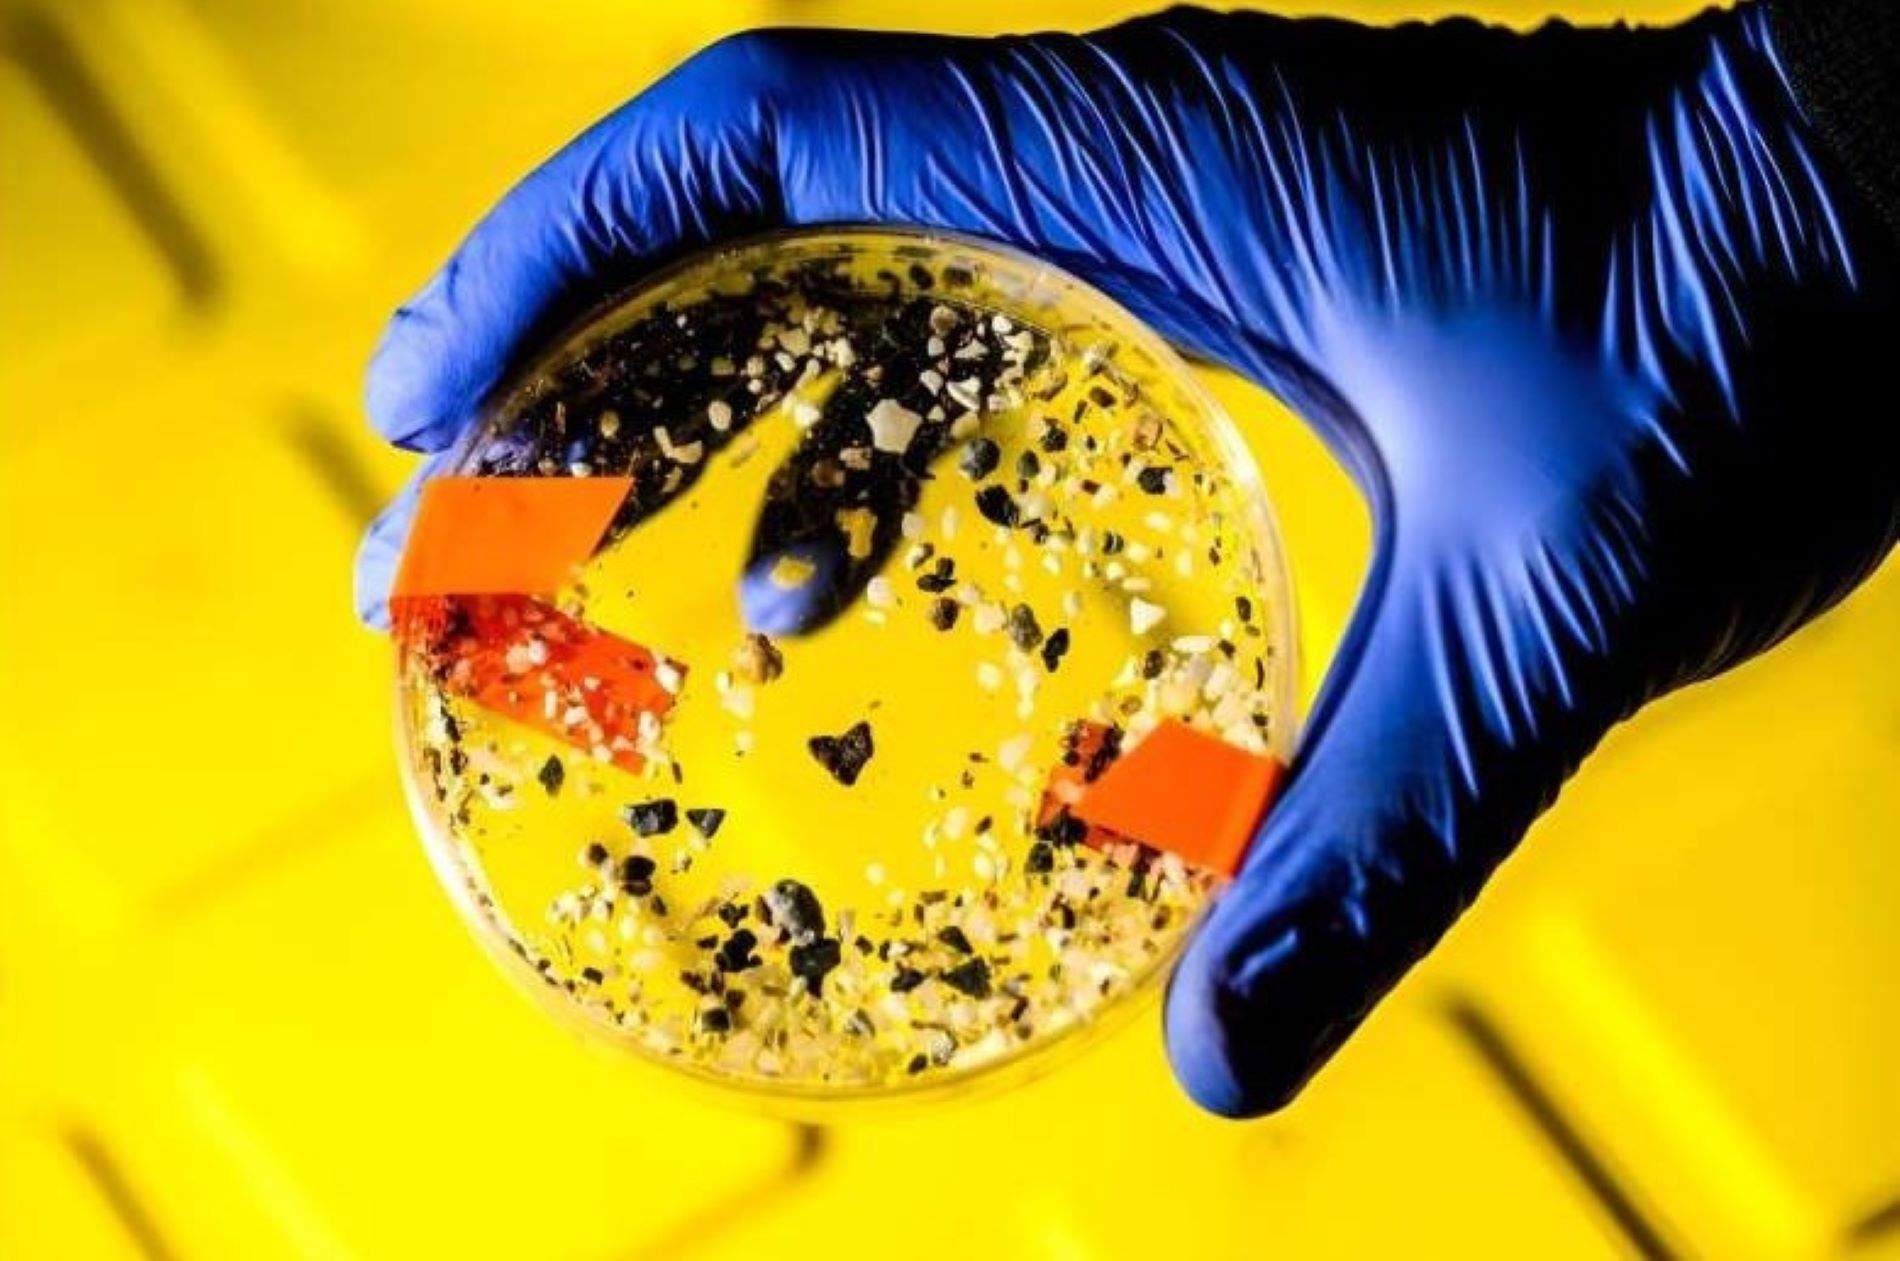 Un estudio encuentra microplásticos en todos los testículos humanos analizados